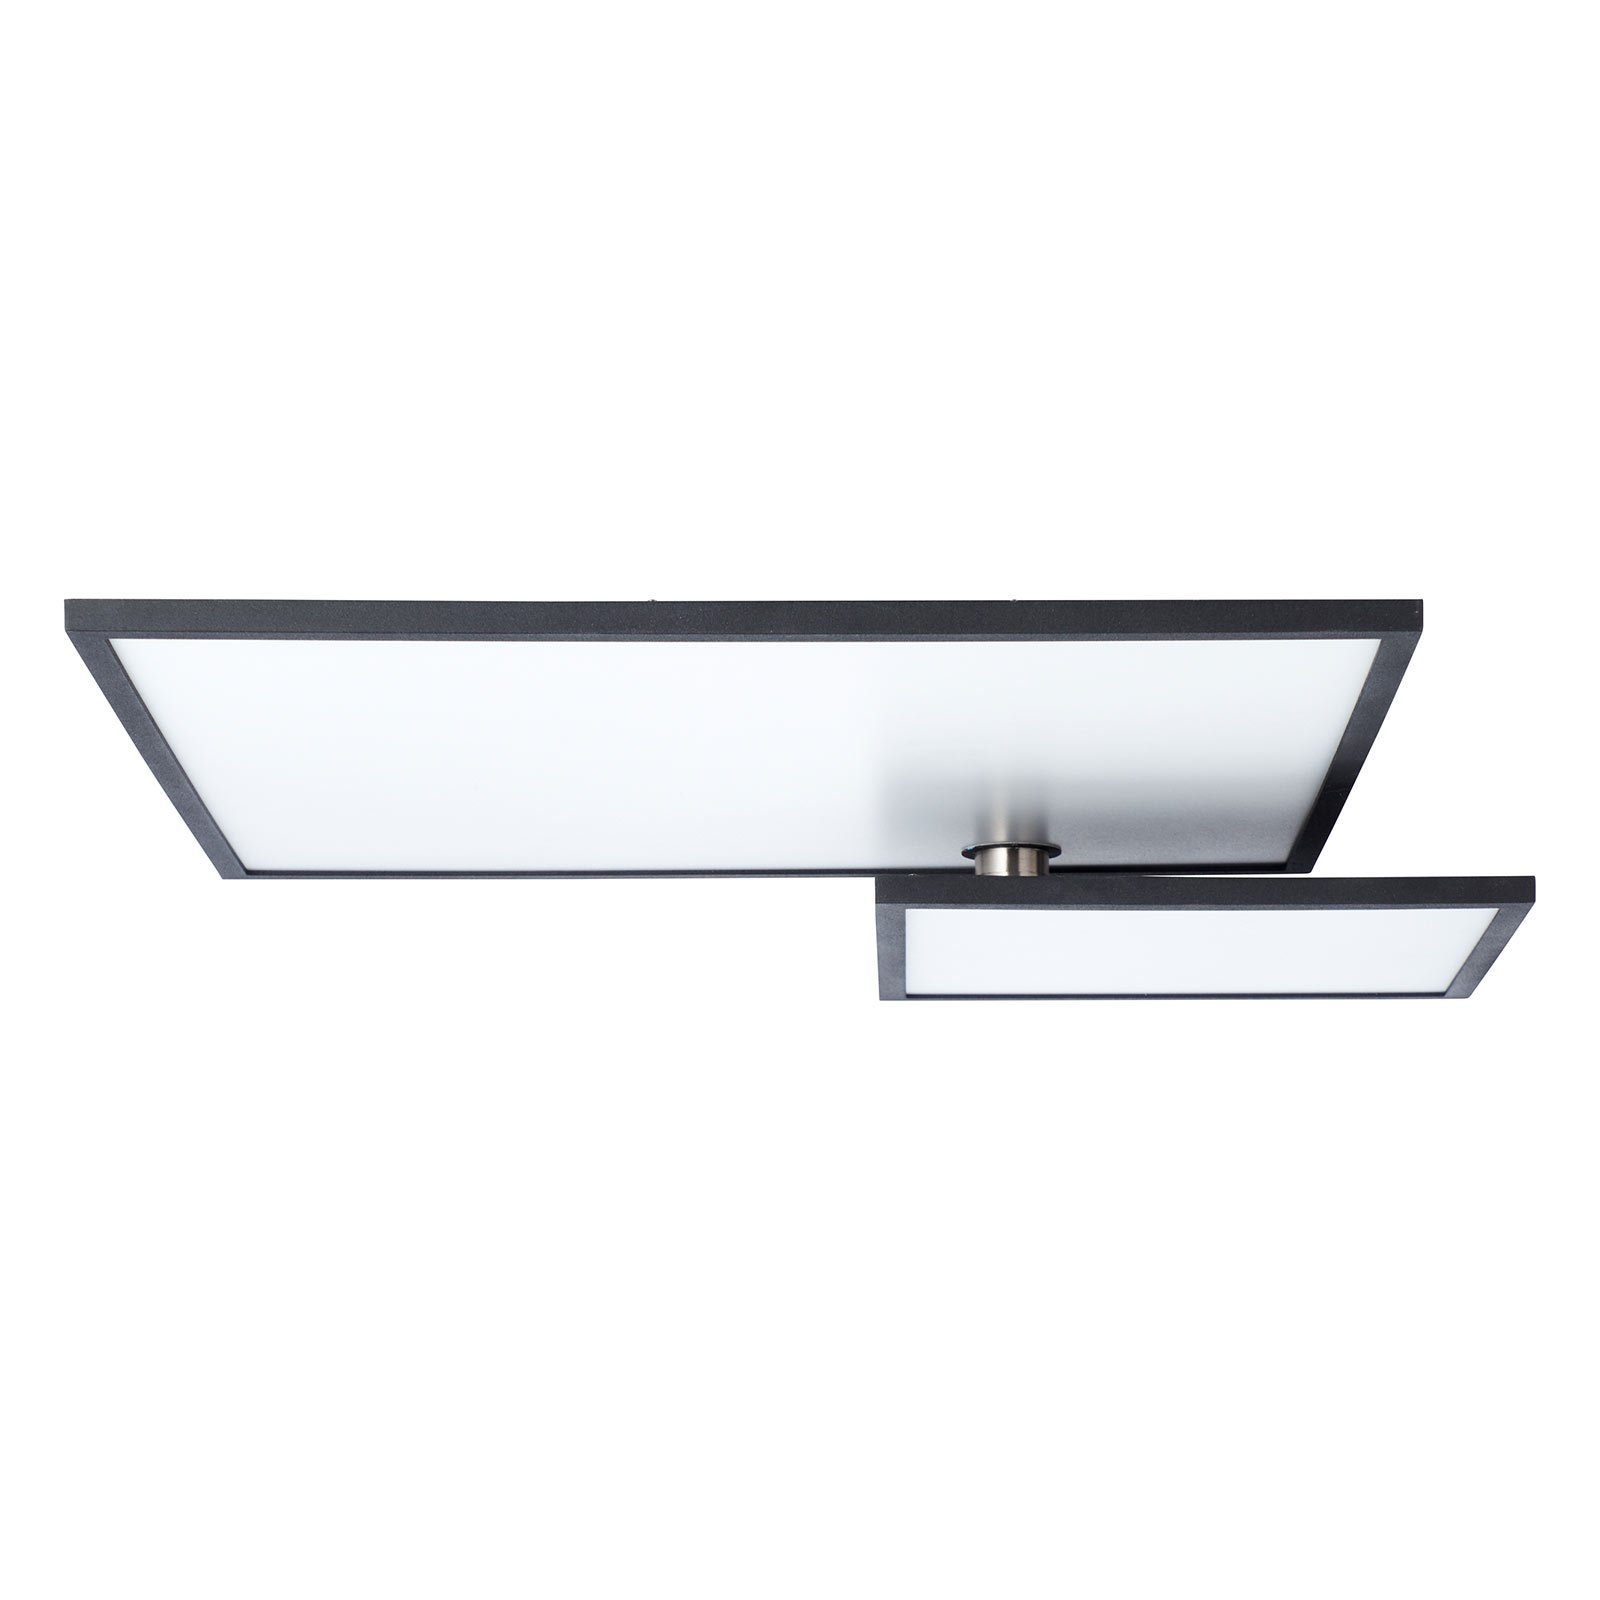 Φωτιστικό οροφής LED Bility, μήκος 62 cm μαύρο πλαίσιο